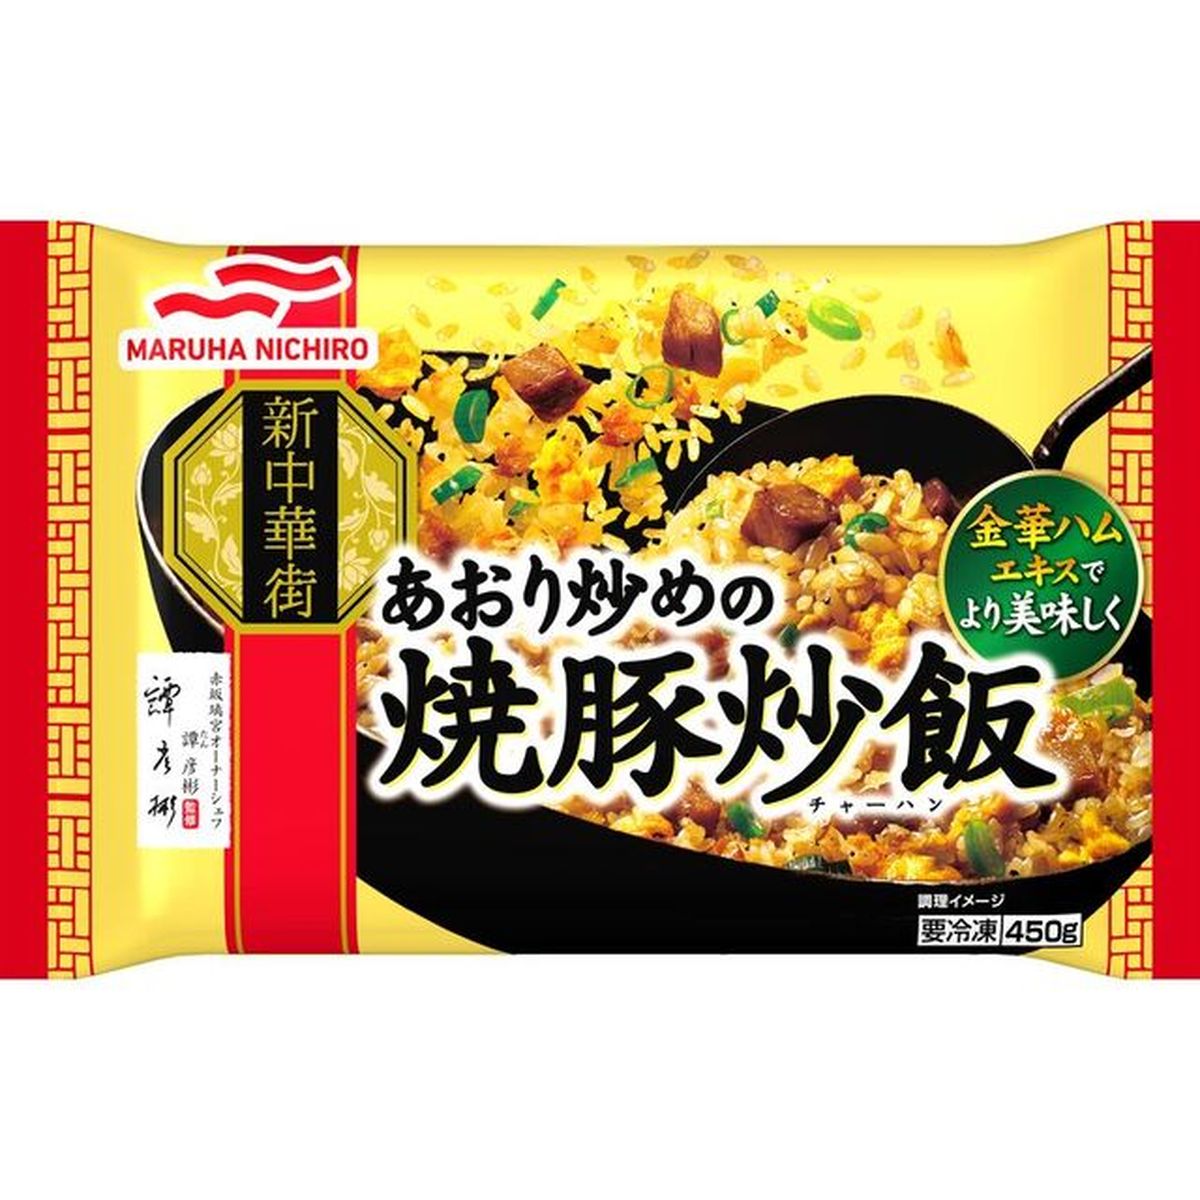 【冷凍】マルハニチロ あおり炒めの焼豚炒飯 450g×12